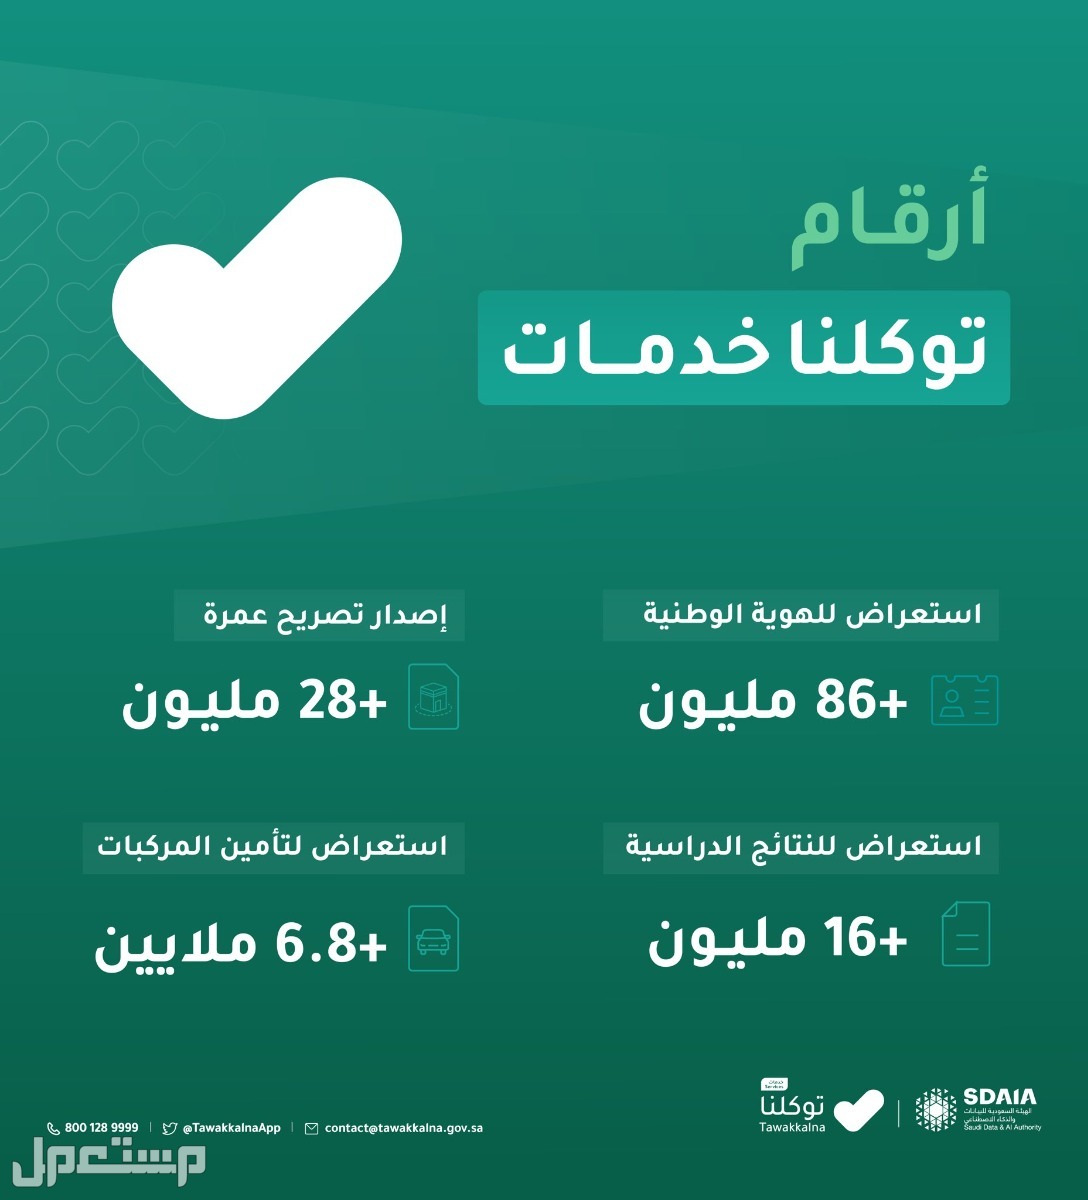 خطوات استعراض إعدادات الحساب في توكلنا خدمات في البحرين أرقام توكلنا